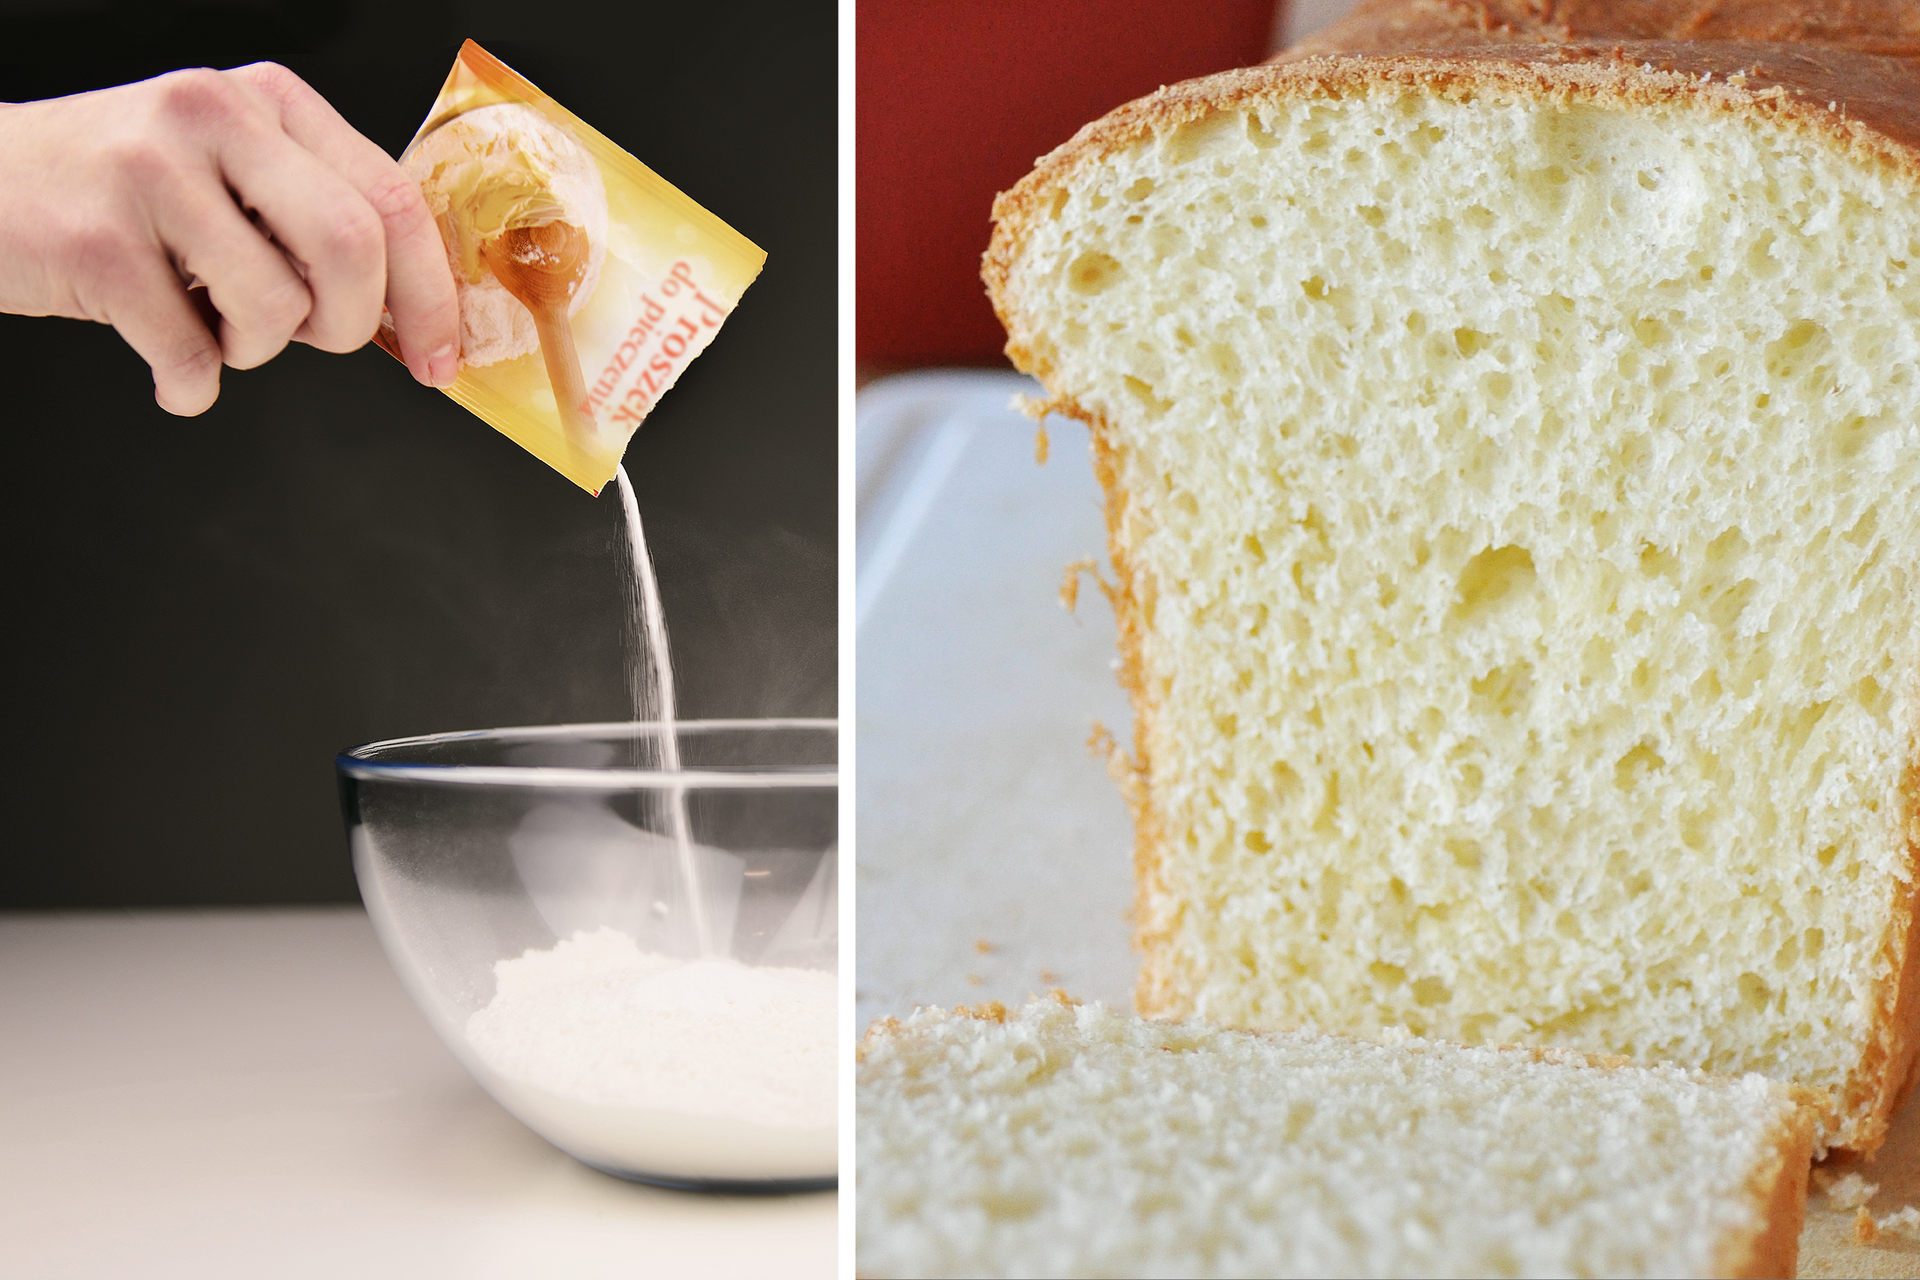 Zdjęcie przedstawiające z lewej strony dłoń wsypującą z torebki proszek do pieczenia do miski, a z prawej strony przekrój puszystego, wyrośniętego ciasta drożdżowego.